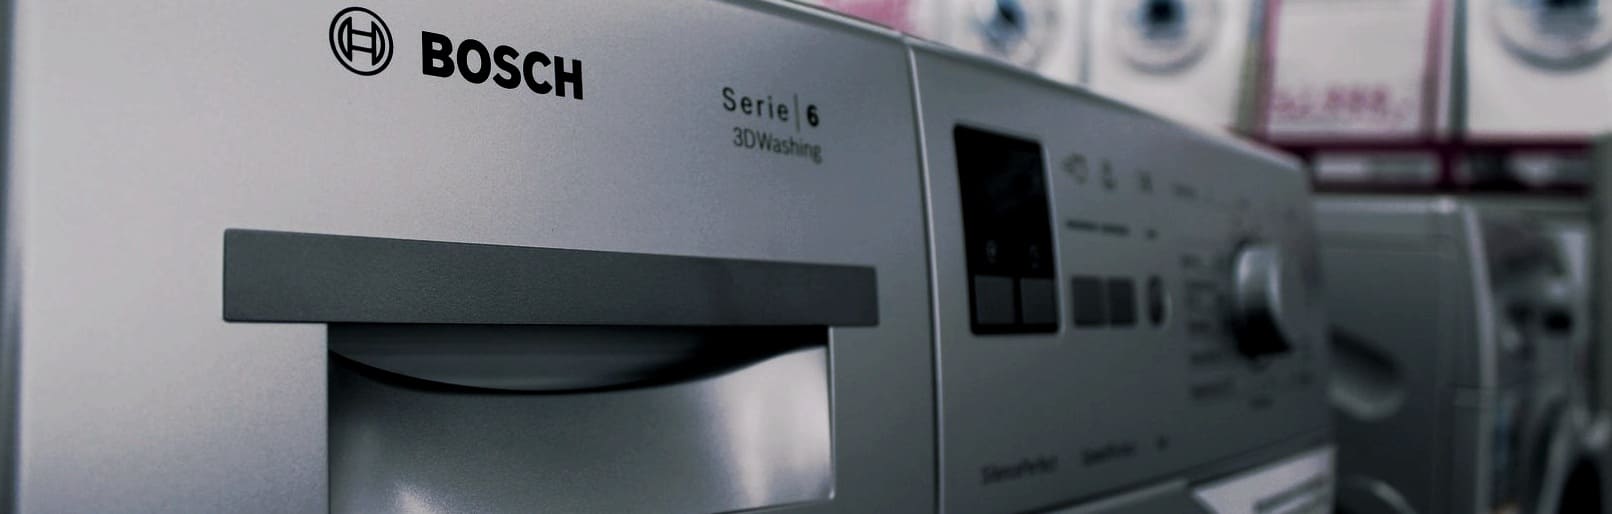 Pogosti modeli pralnih strojev Bosch